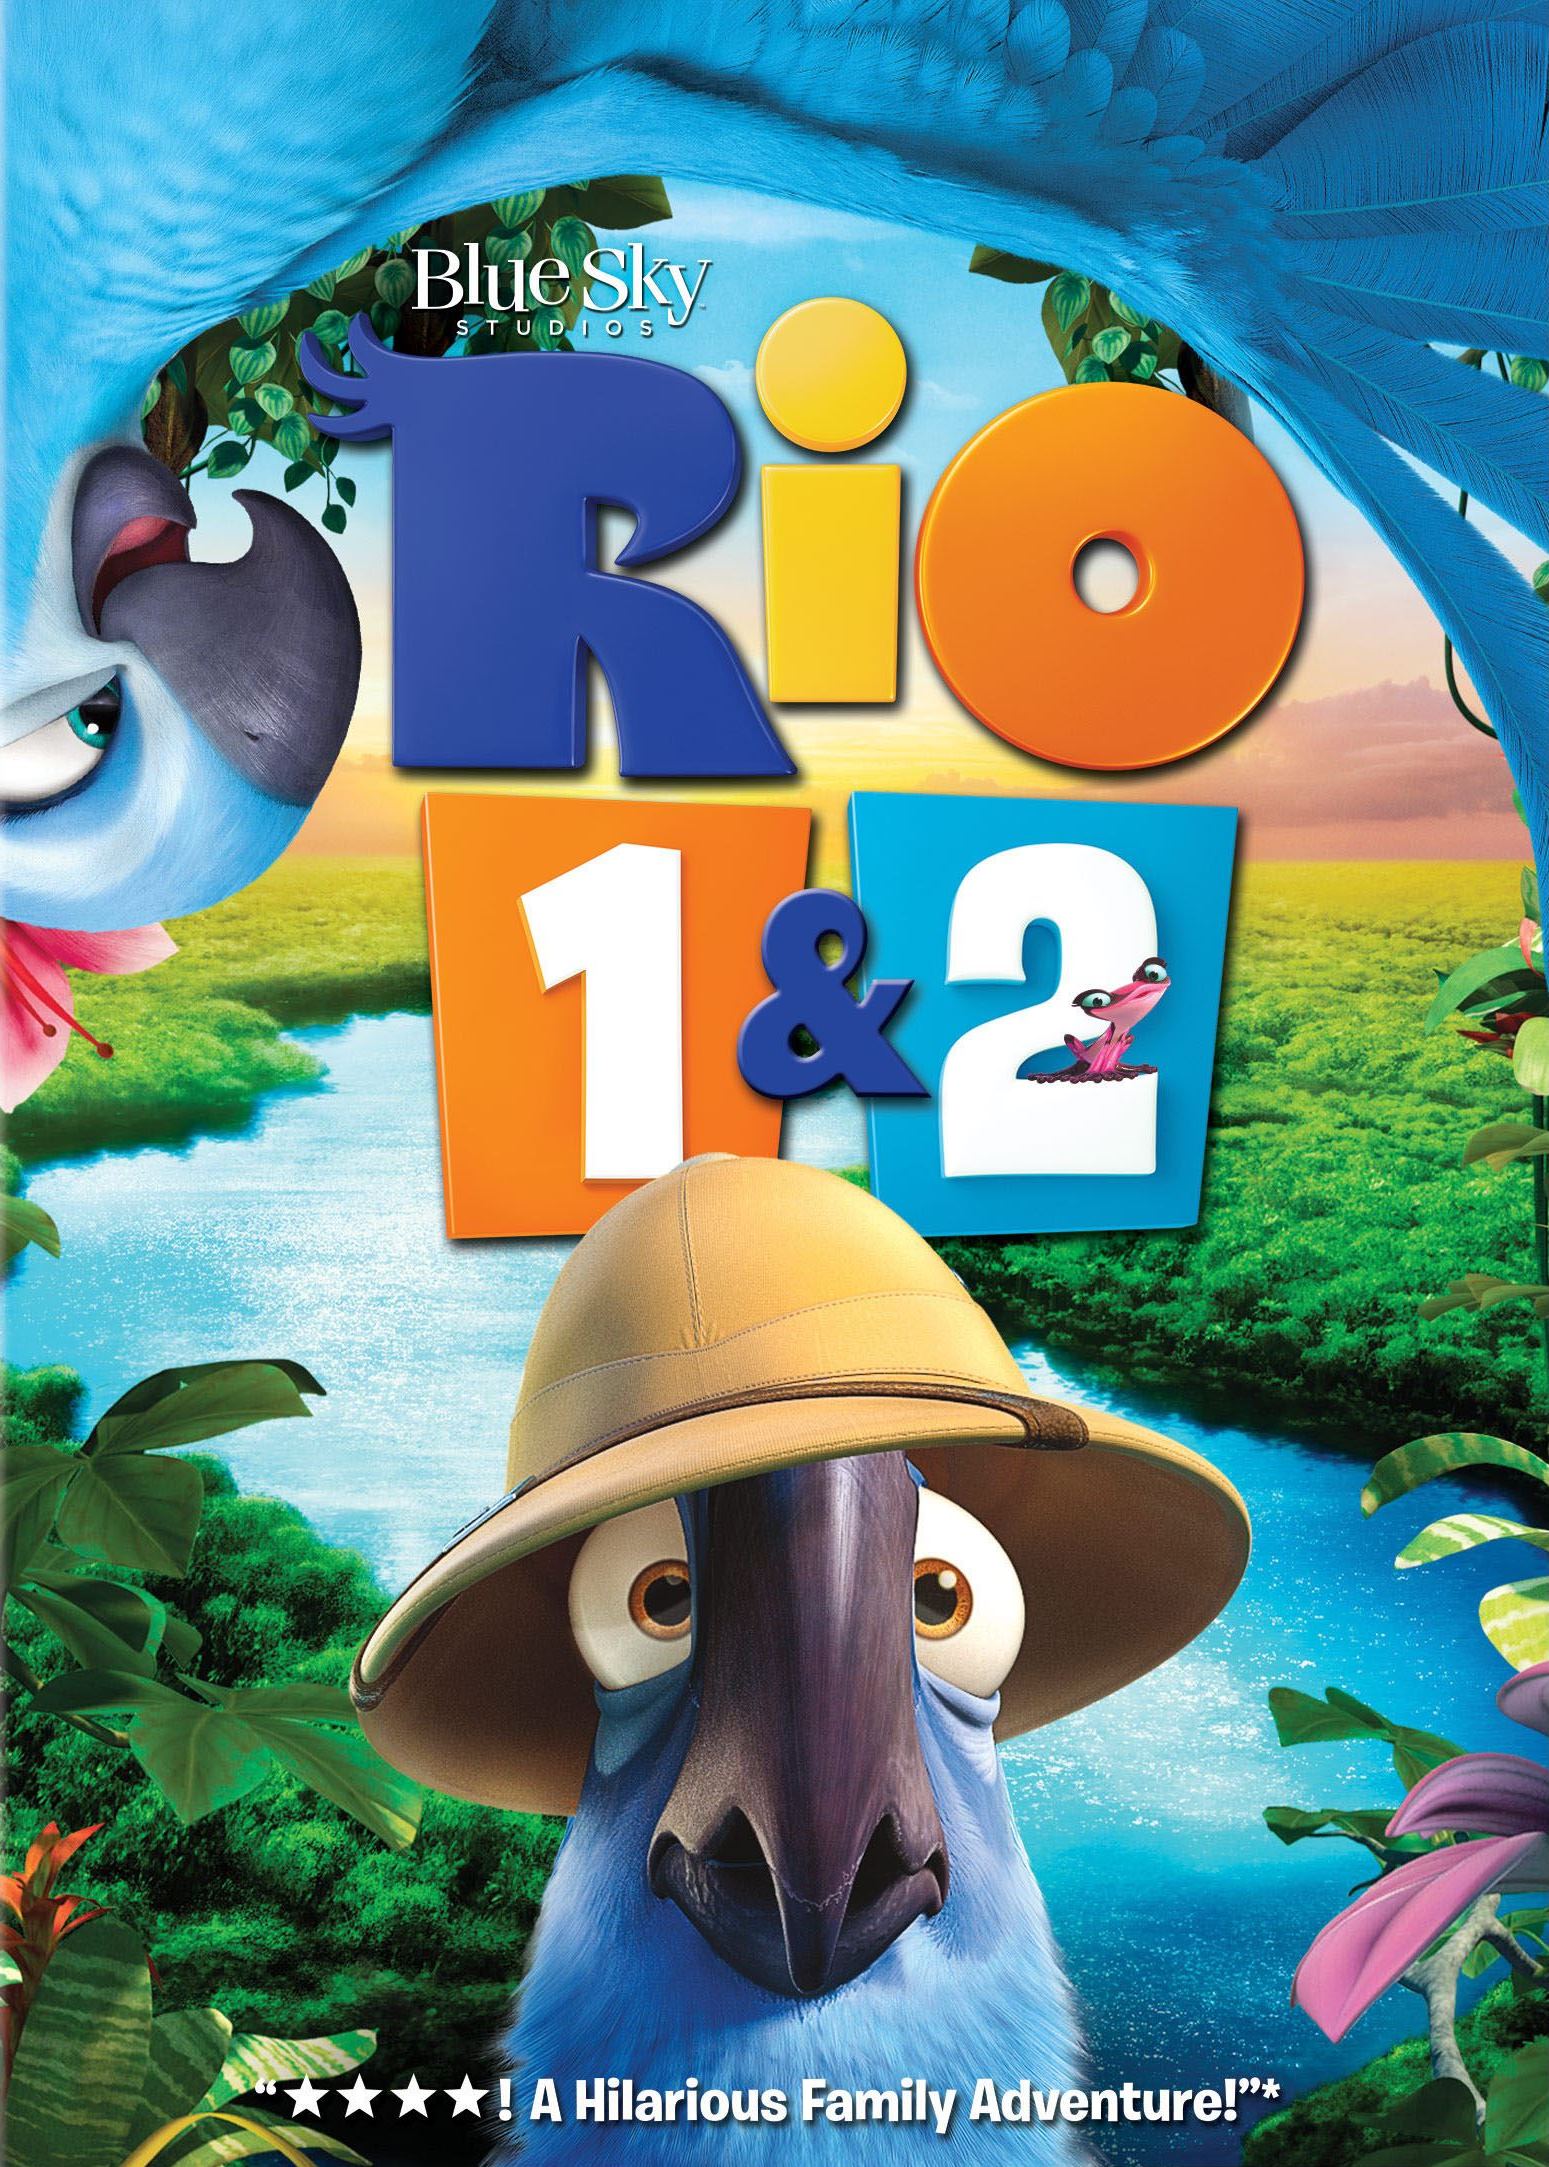 rio 2 teaser poster